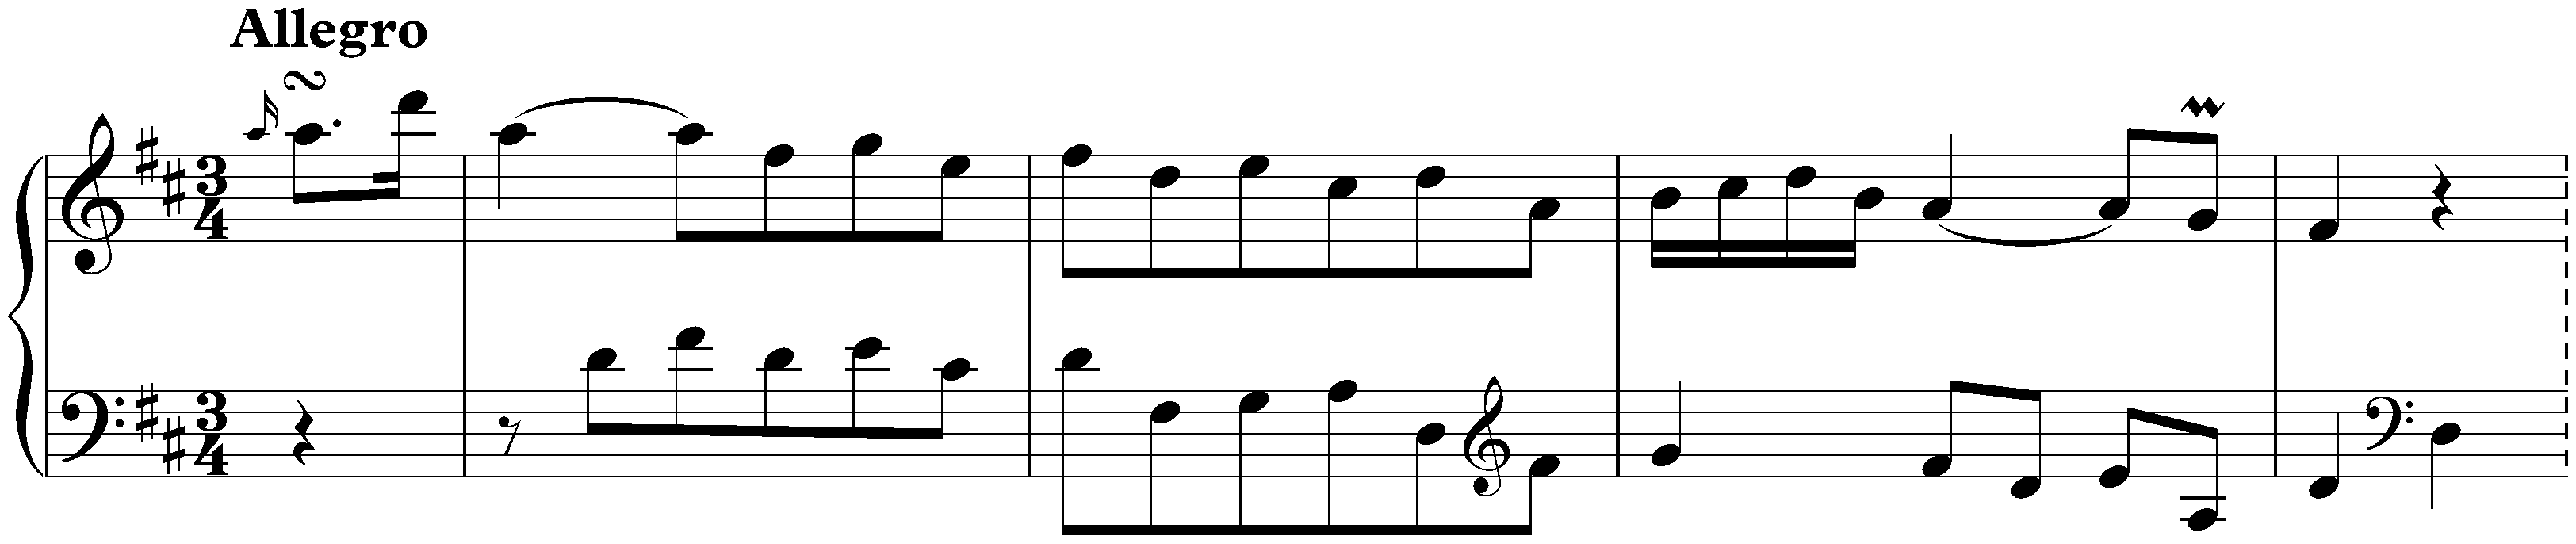 Sonata in D major, Hob. XVI:24; 1. Allegro